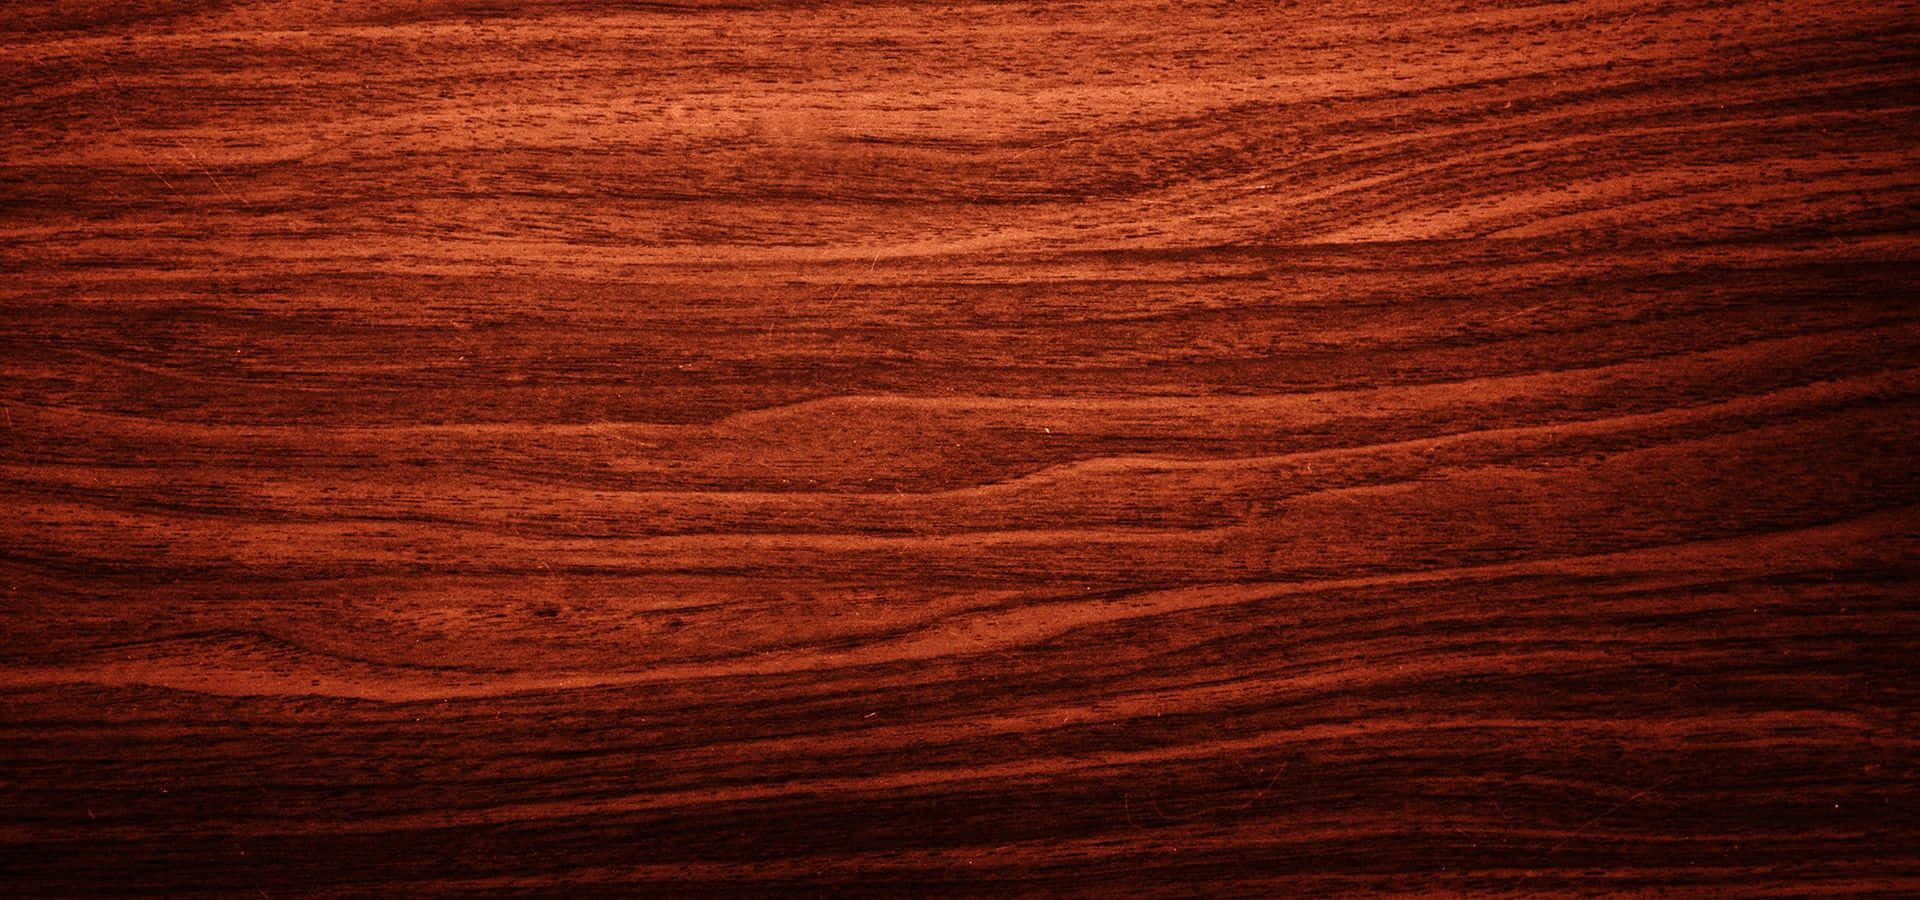 A Close-Up of Mahogany Wood Grain Texture Wallpaper